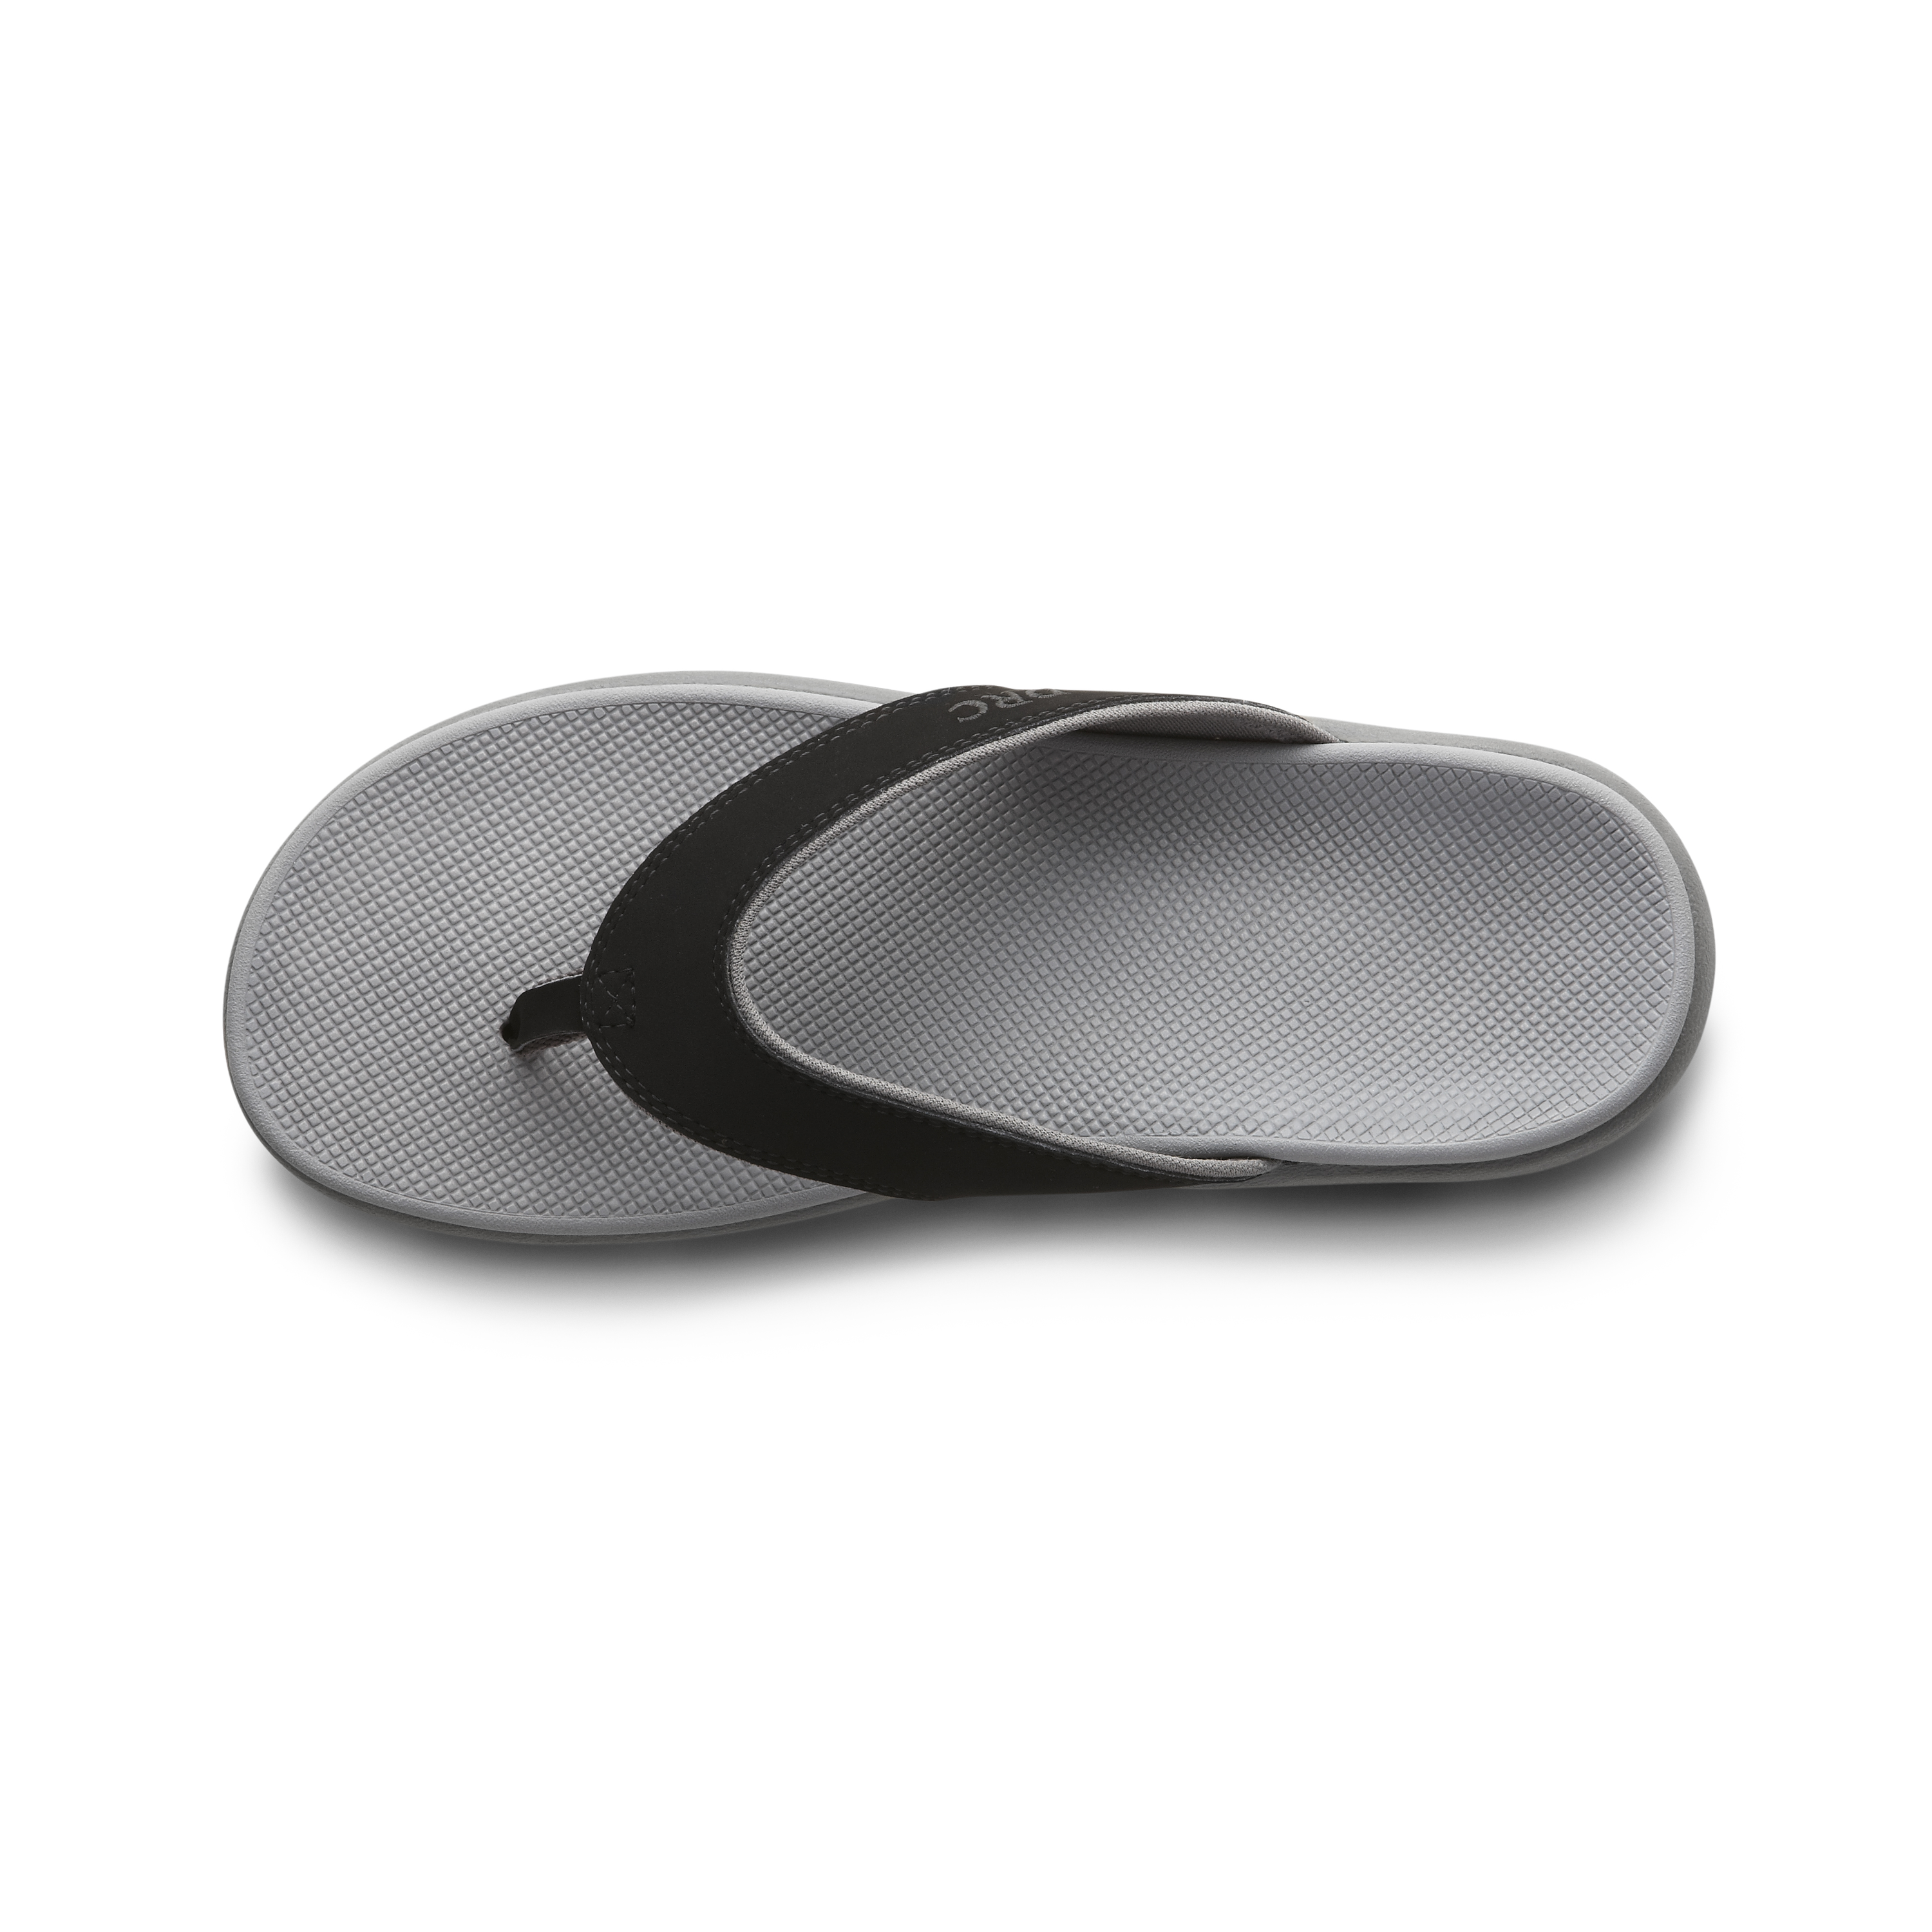 Zusatzbild DR. COMFORT® Shannon schwarz, oben, Orthopädische Schuhe, Leichter Sommerschuh mit eingearbeitetem Fußbett für mehr Stabilität